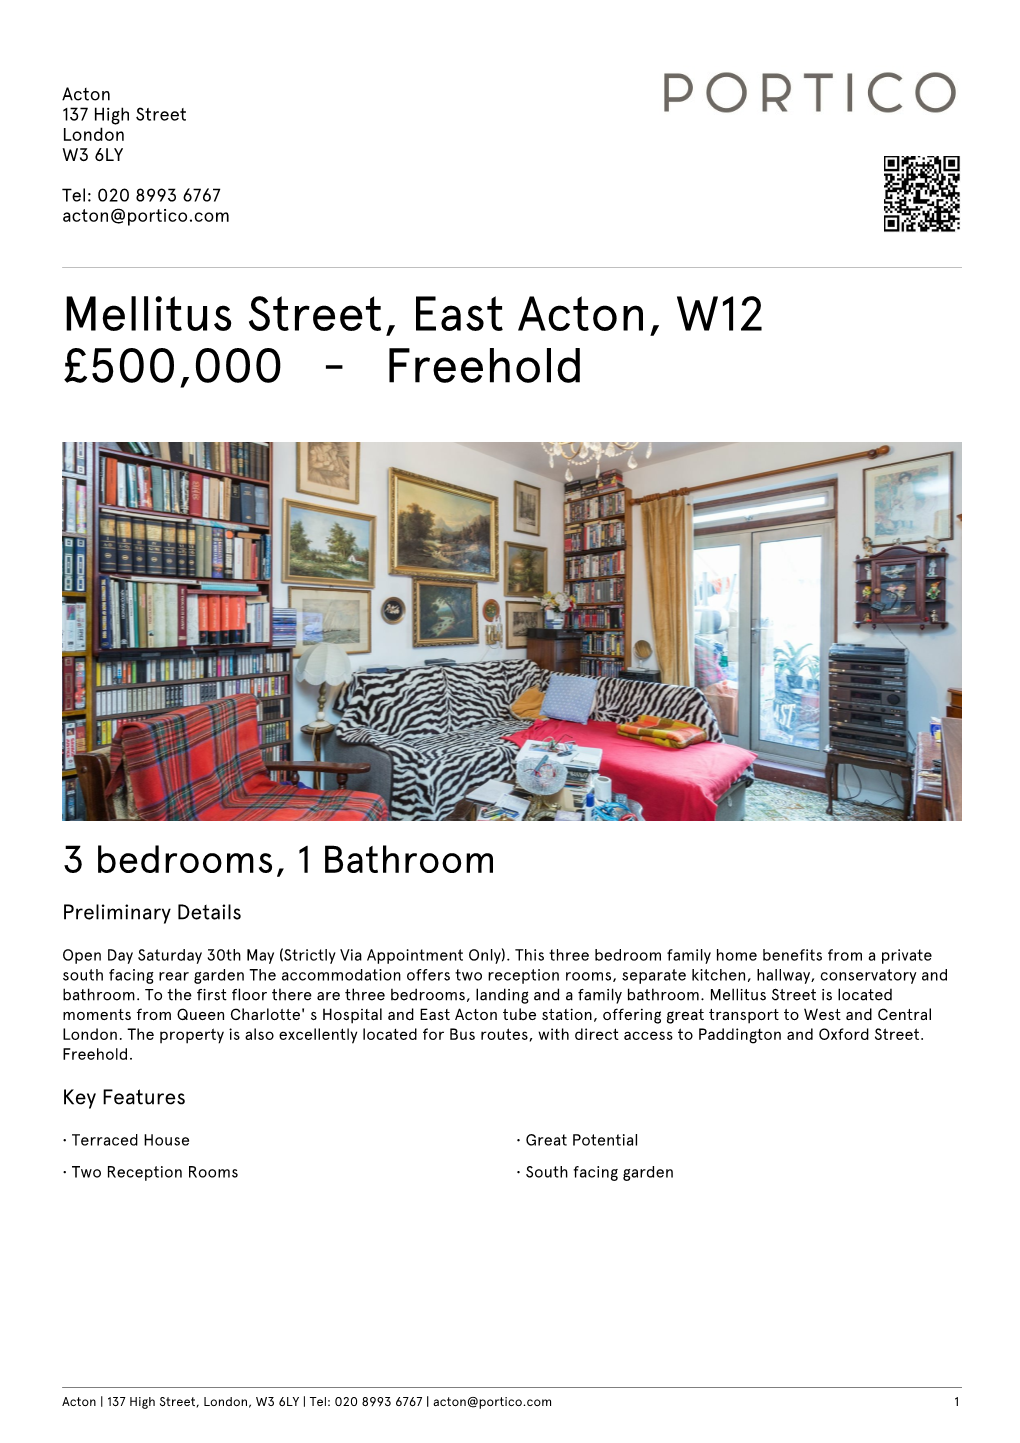 Mellitus Street, East Acton, W12 £500000